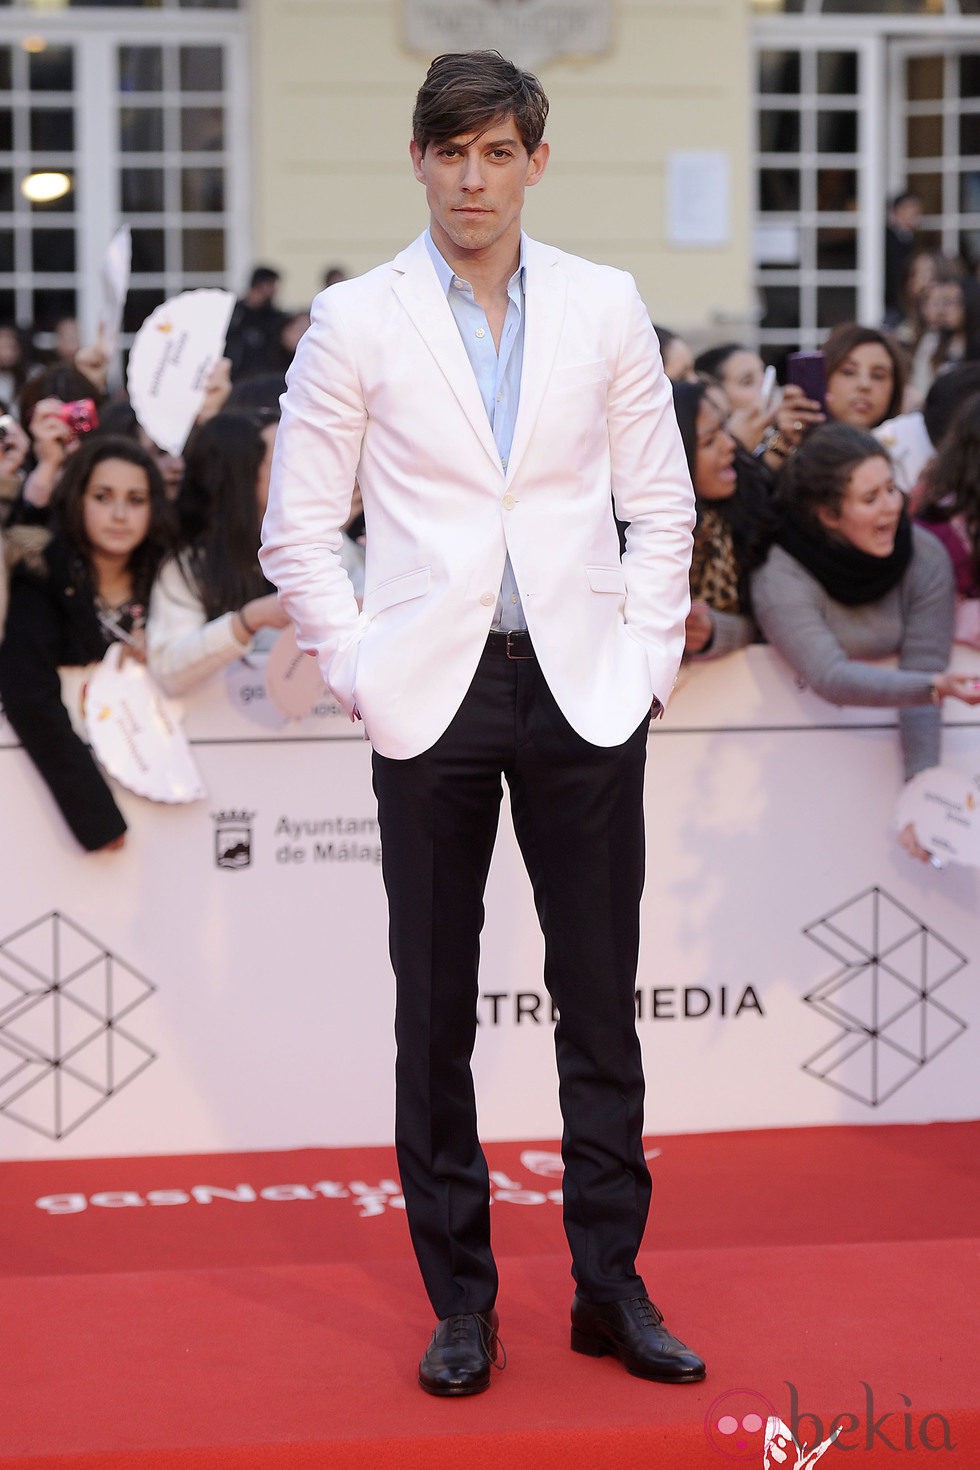 Adrián lastra en la gala de clausura del Festival de Málaga 2014